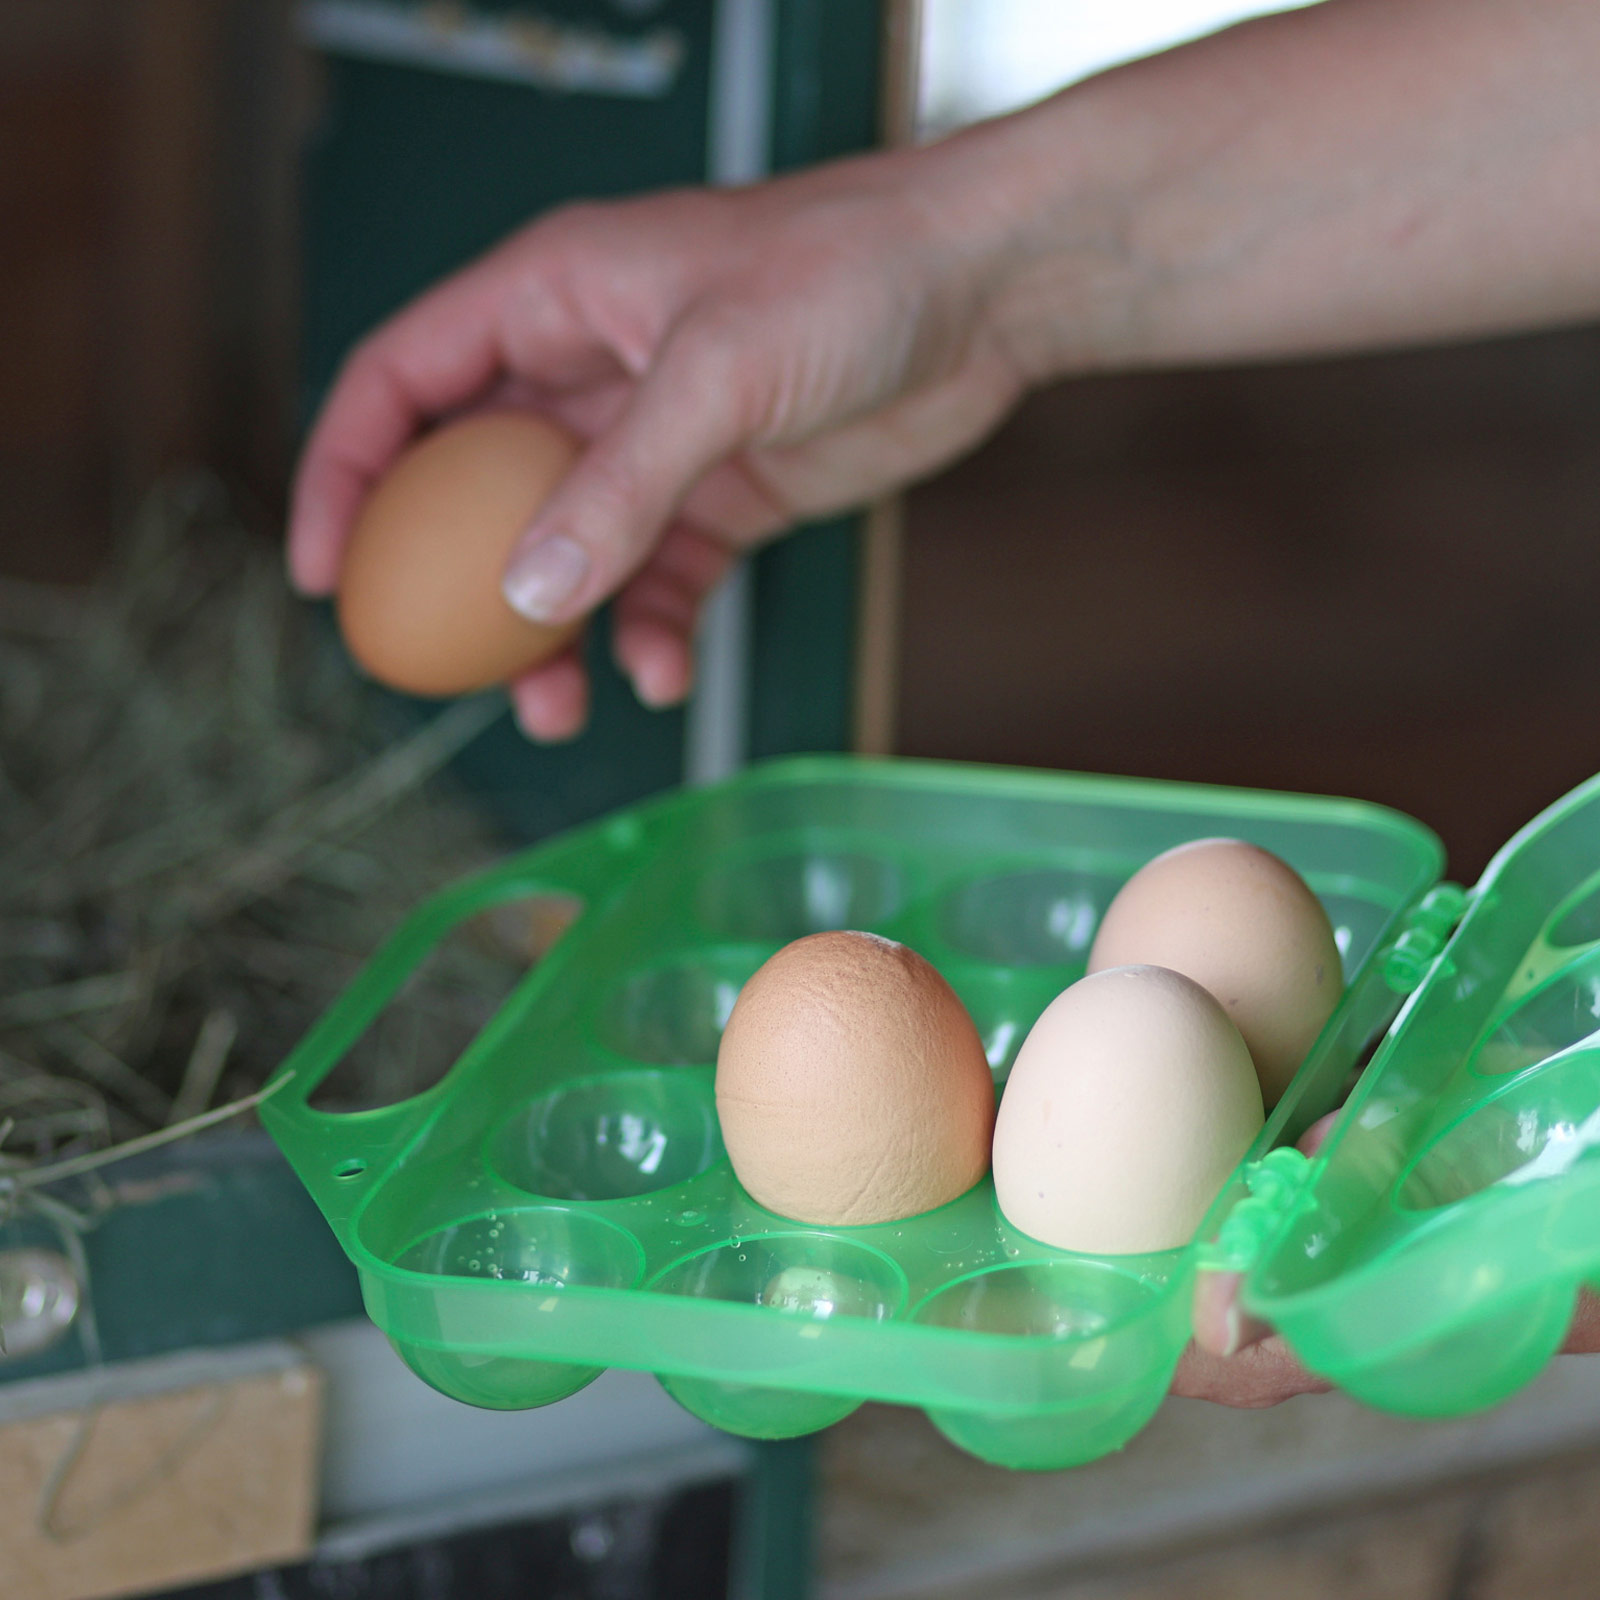 Eier-Transportbox Aufbewahrungsbox Kunststoff für 12 Eier